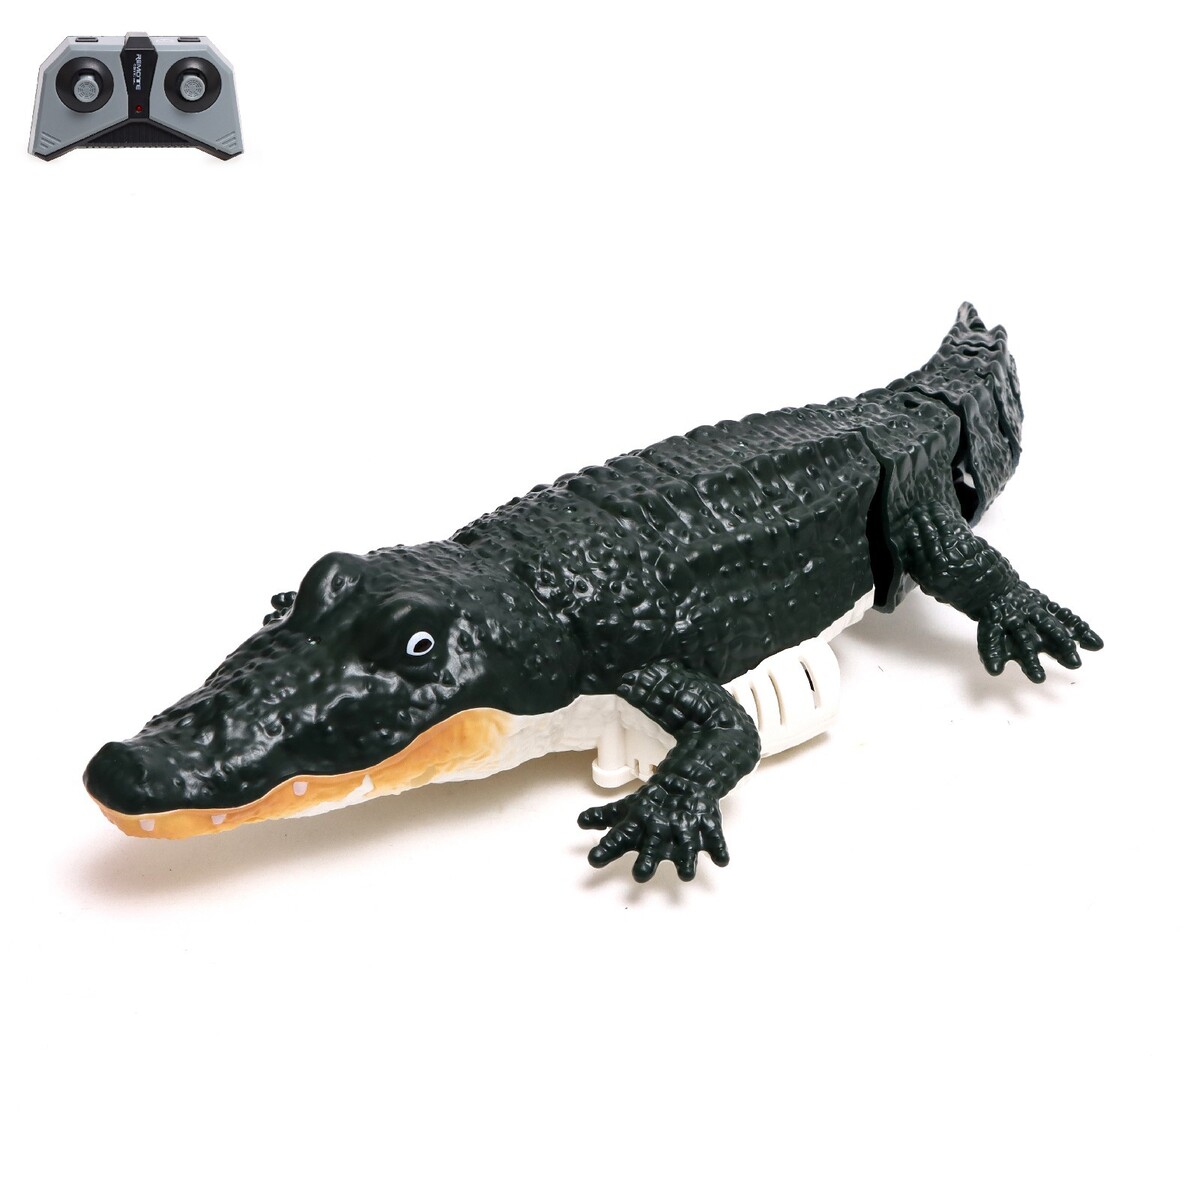 Крокодил радиоуправляемый, плавает, работает от аккумулятора, цвет зеленый крокодил